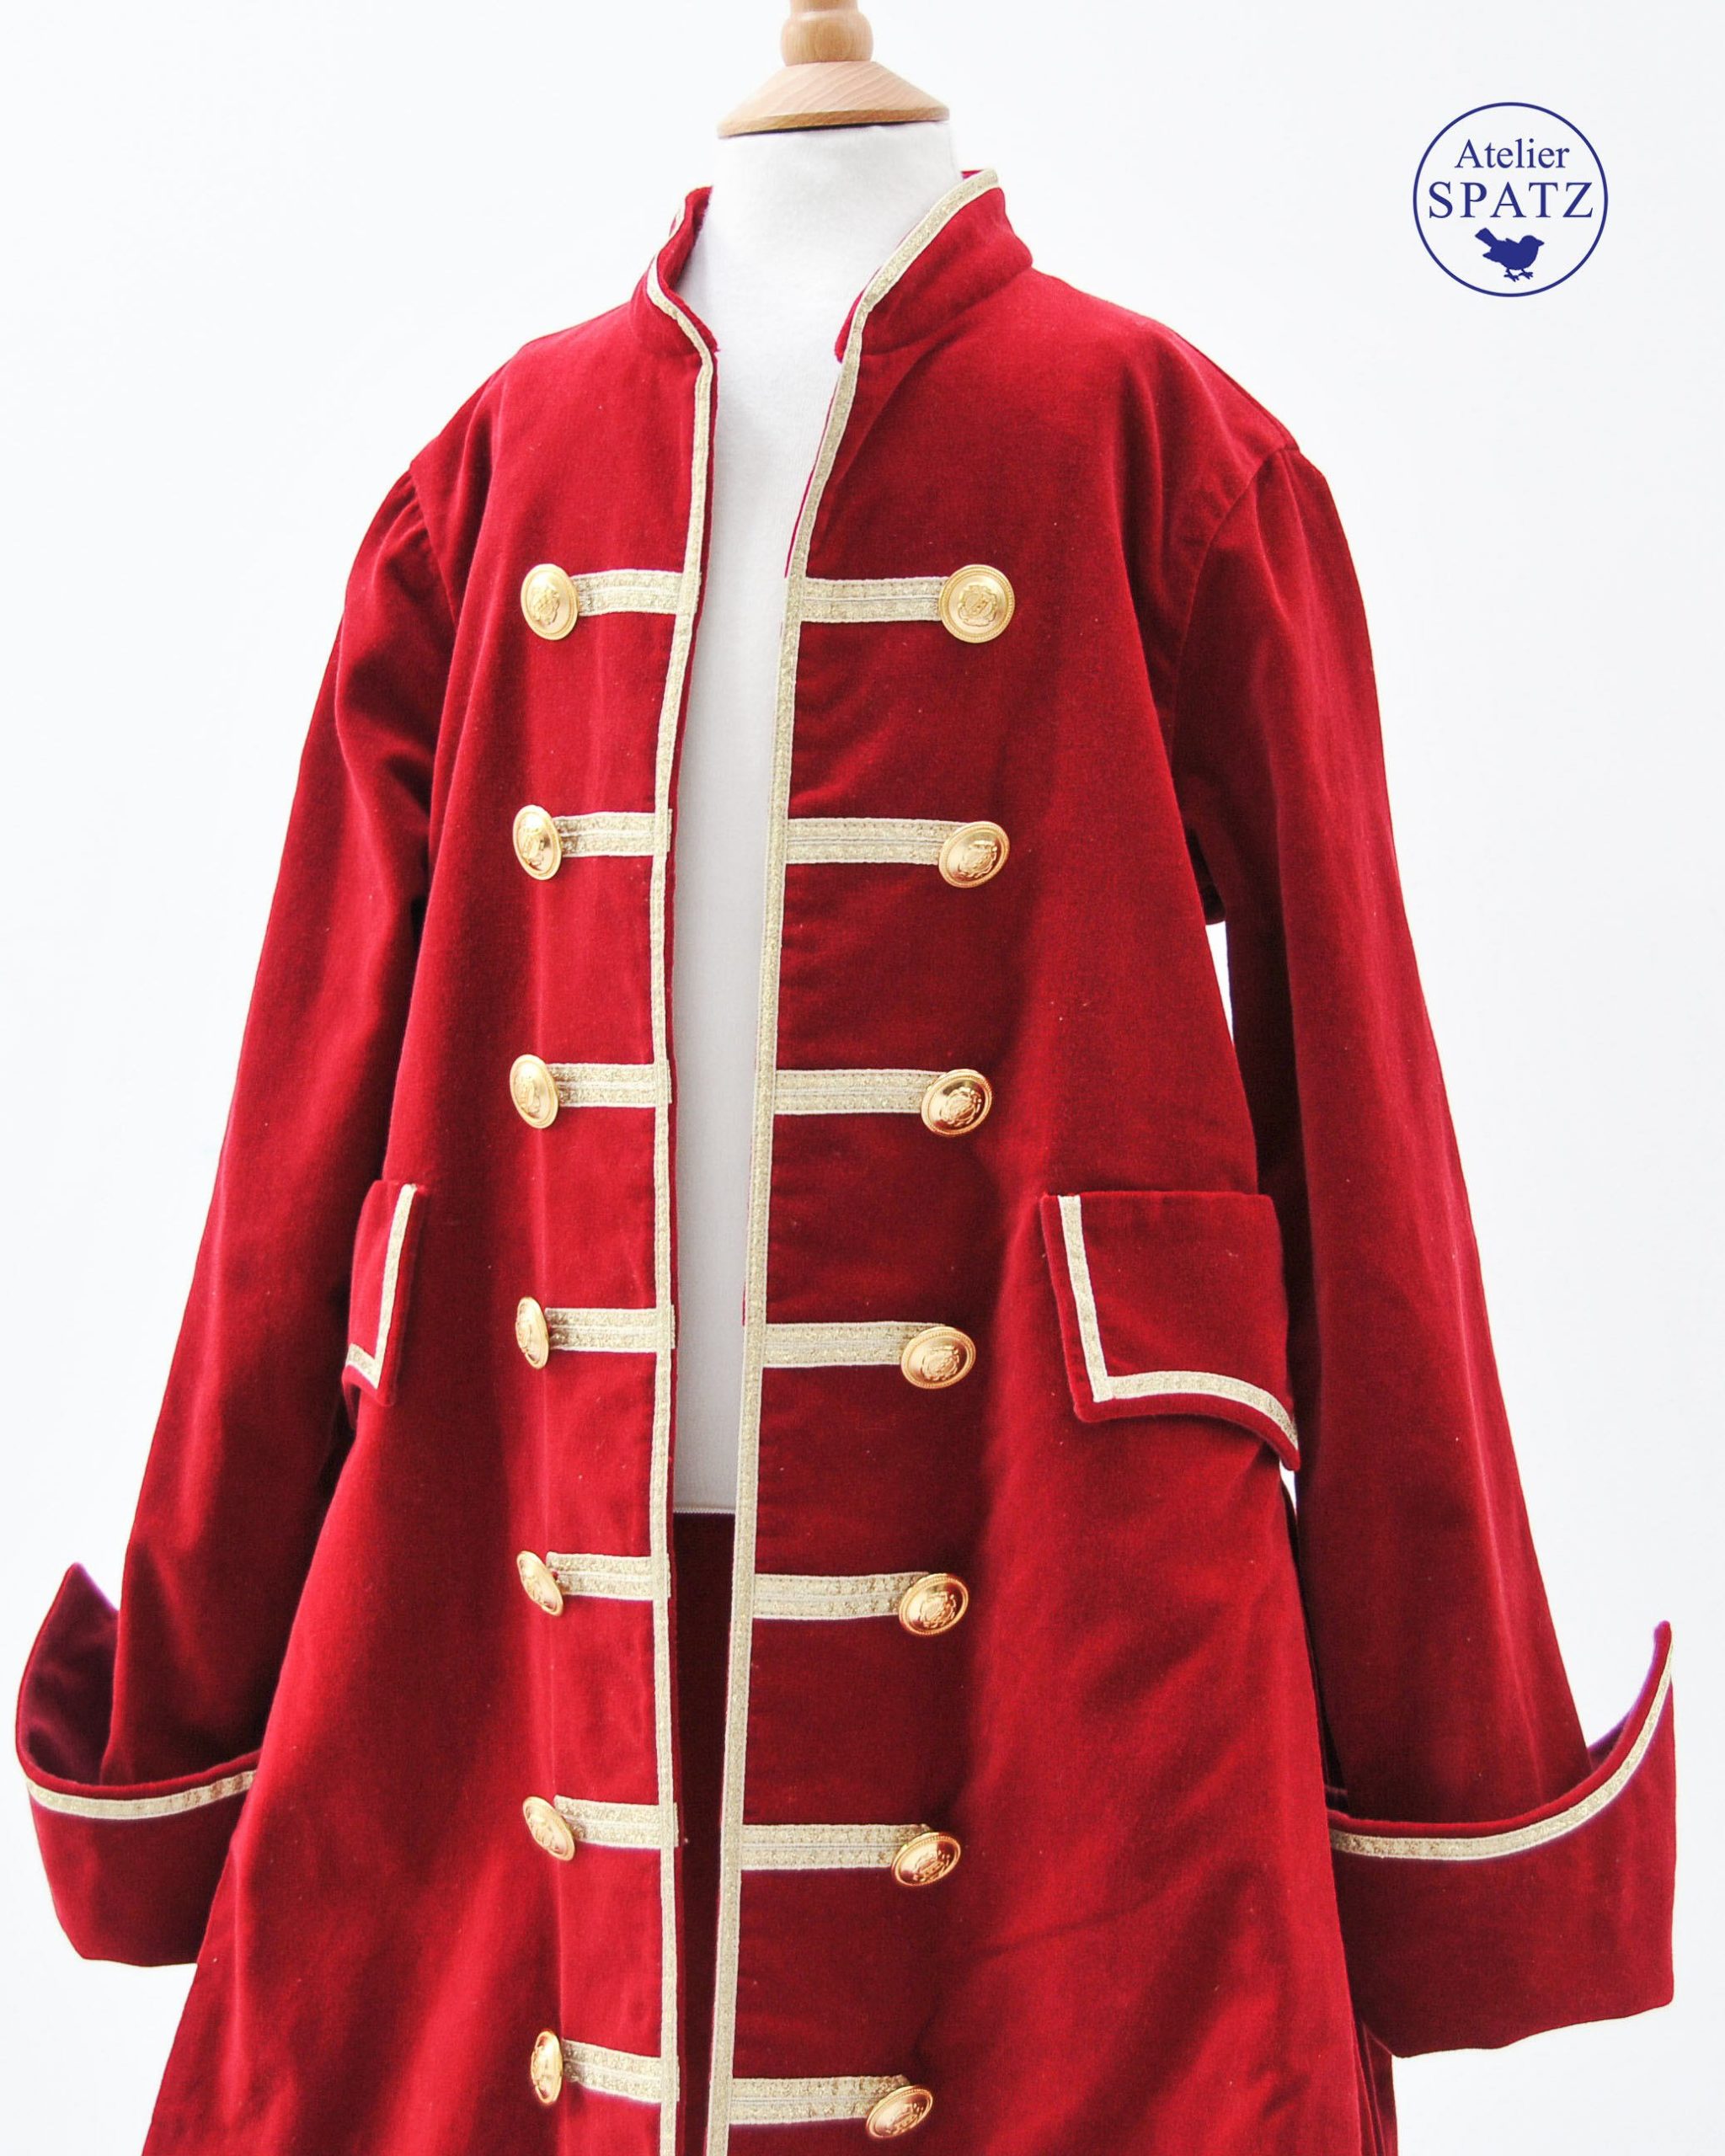 Manteau de pirate en velours | Costume de pirate | Costume d'Halloween | Costume pour enfants | Atelier Spatz